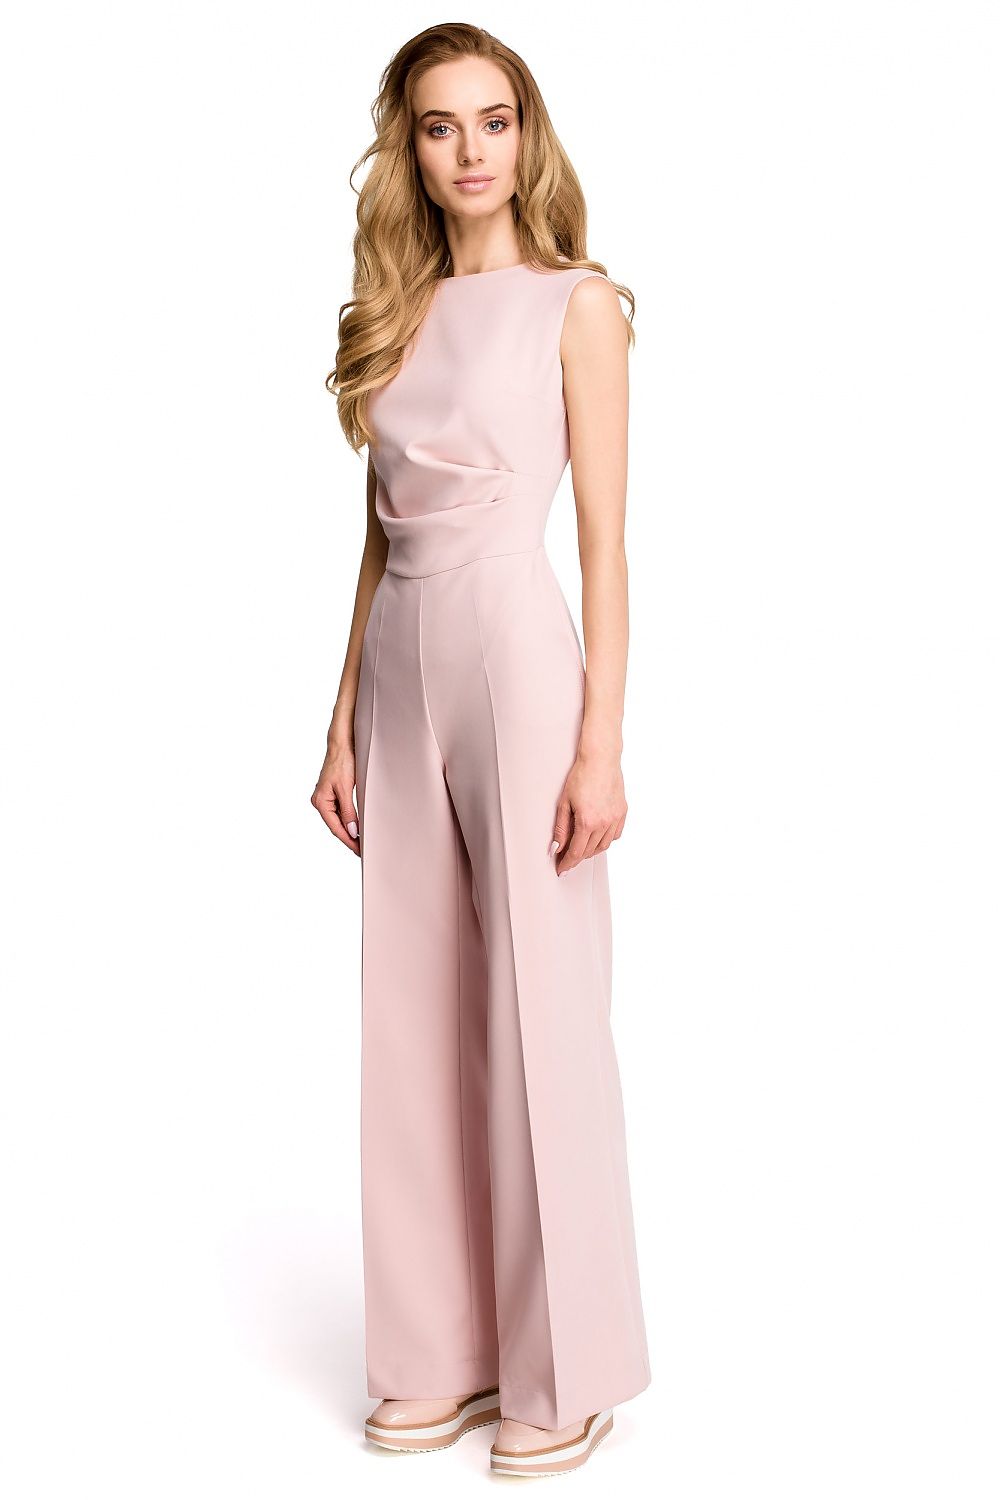 Verhoogd Perceptie Etna broekpak model 116635 Stylove overalls groothandel dameskleding online